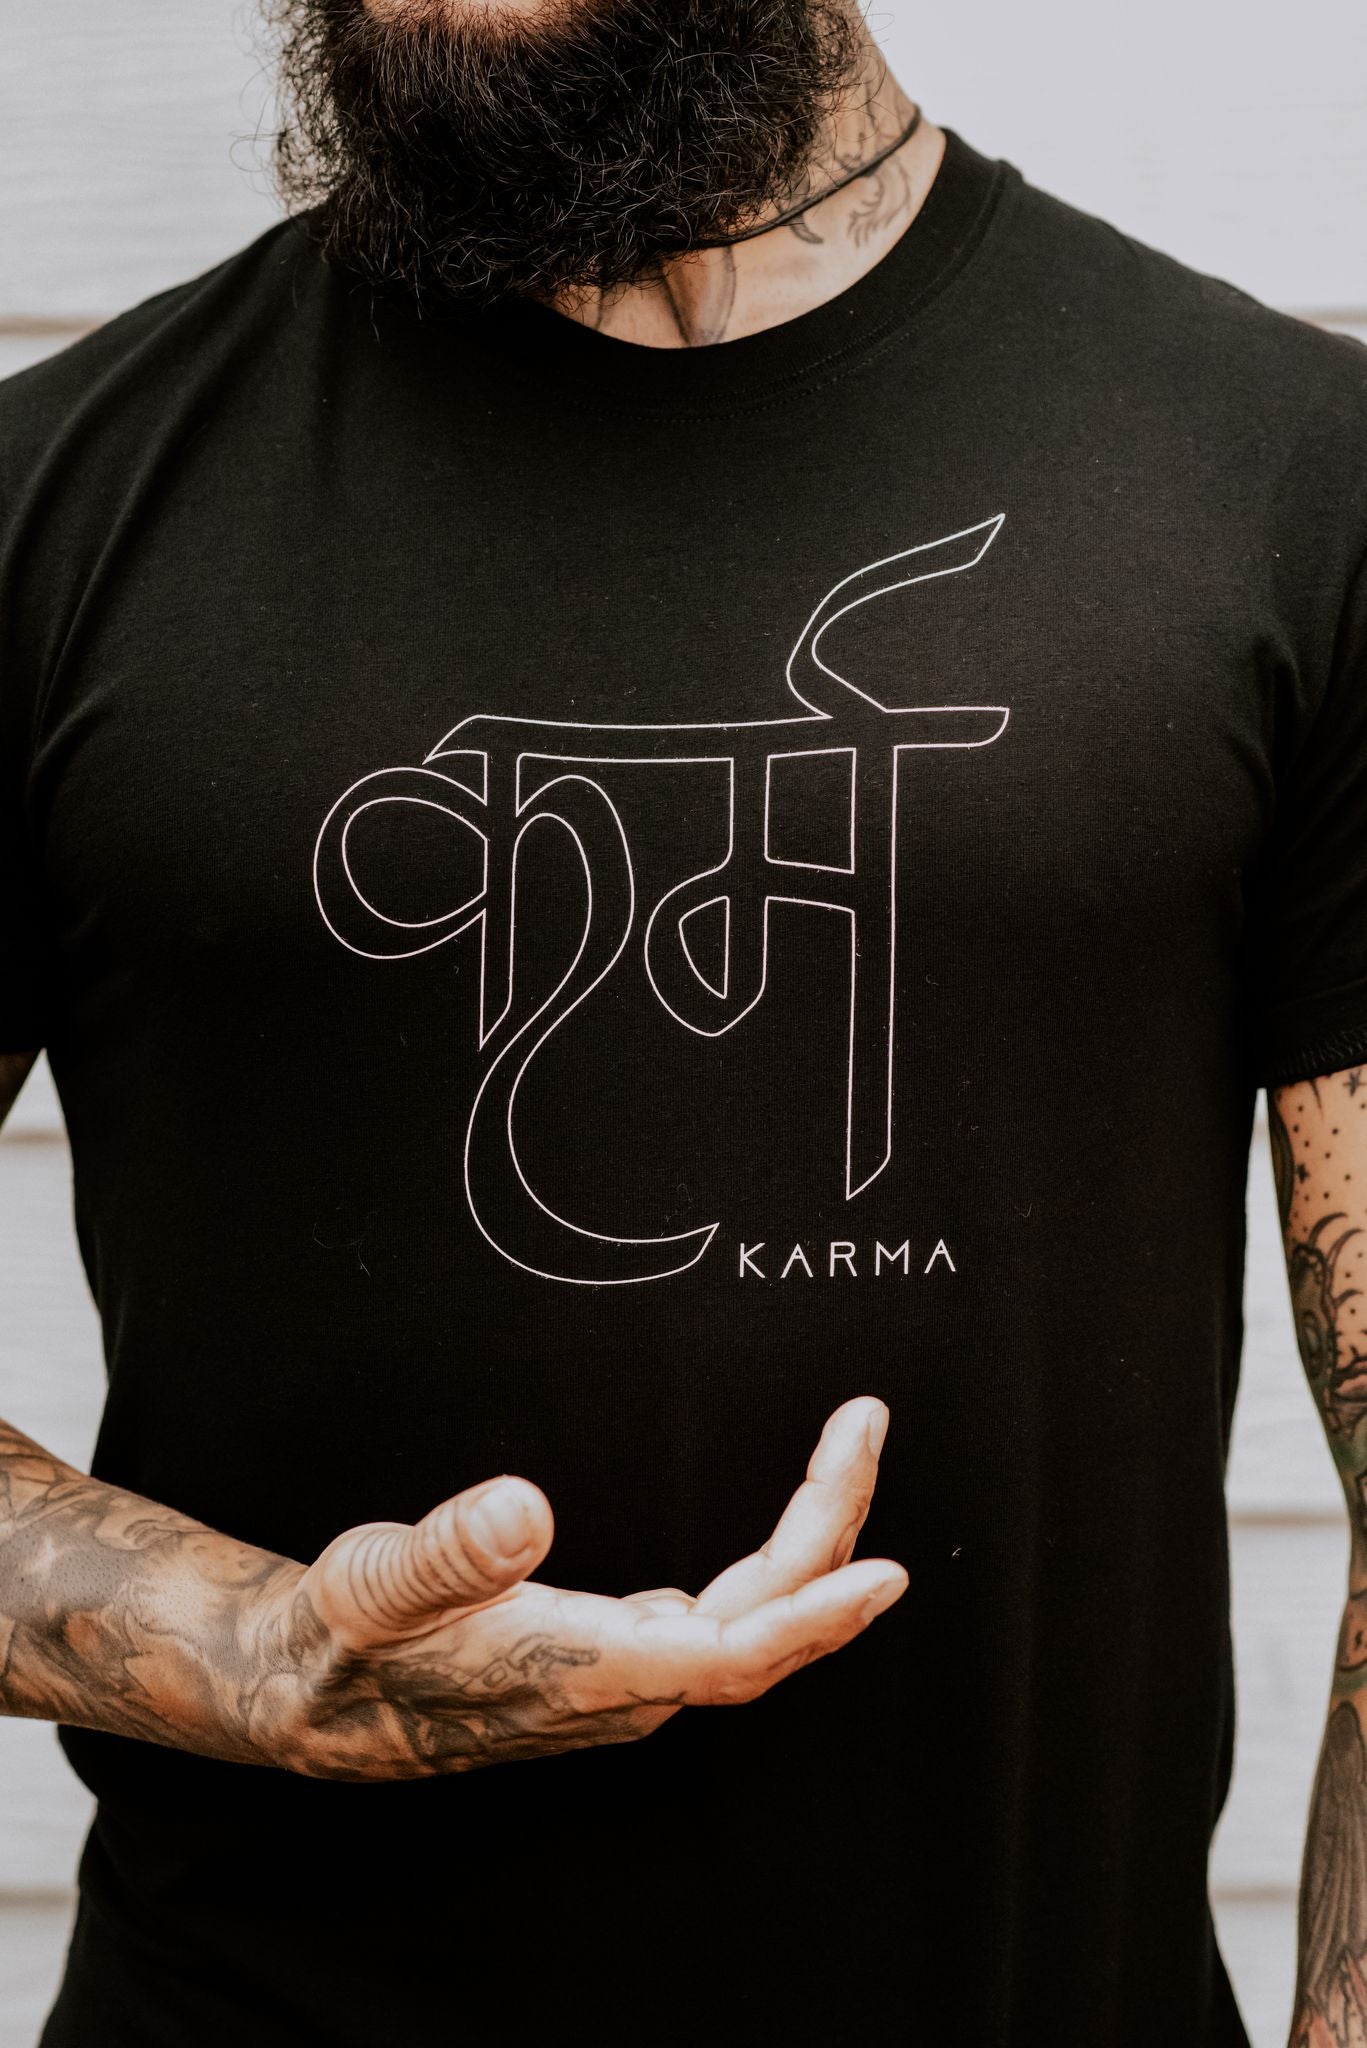 Karma - Zen Warrior Shop